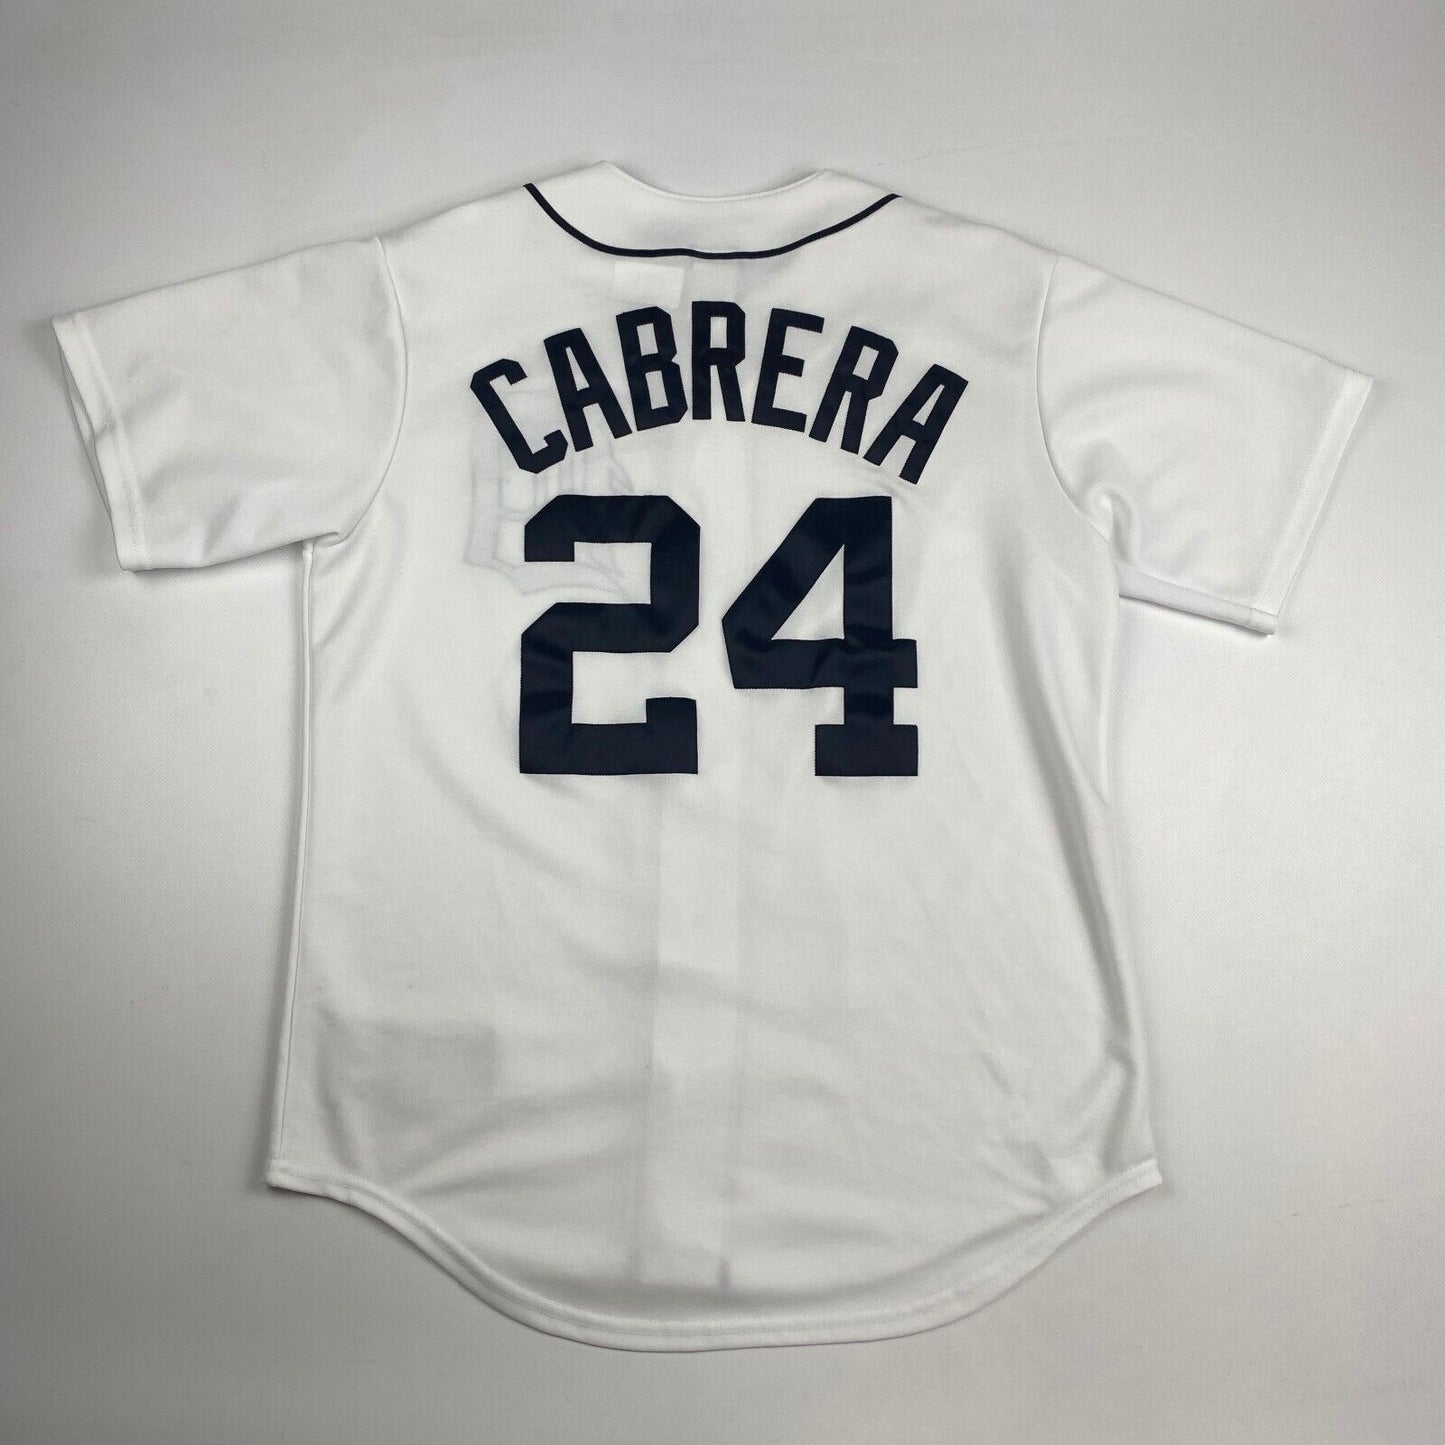 VINTAGE 90s Detroit Tigers #24 Cabrera Baseball Jersey Shirt sz Medium Men